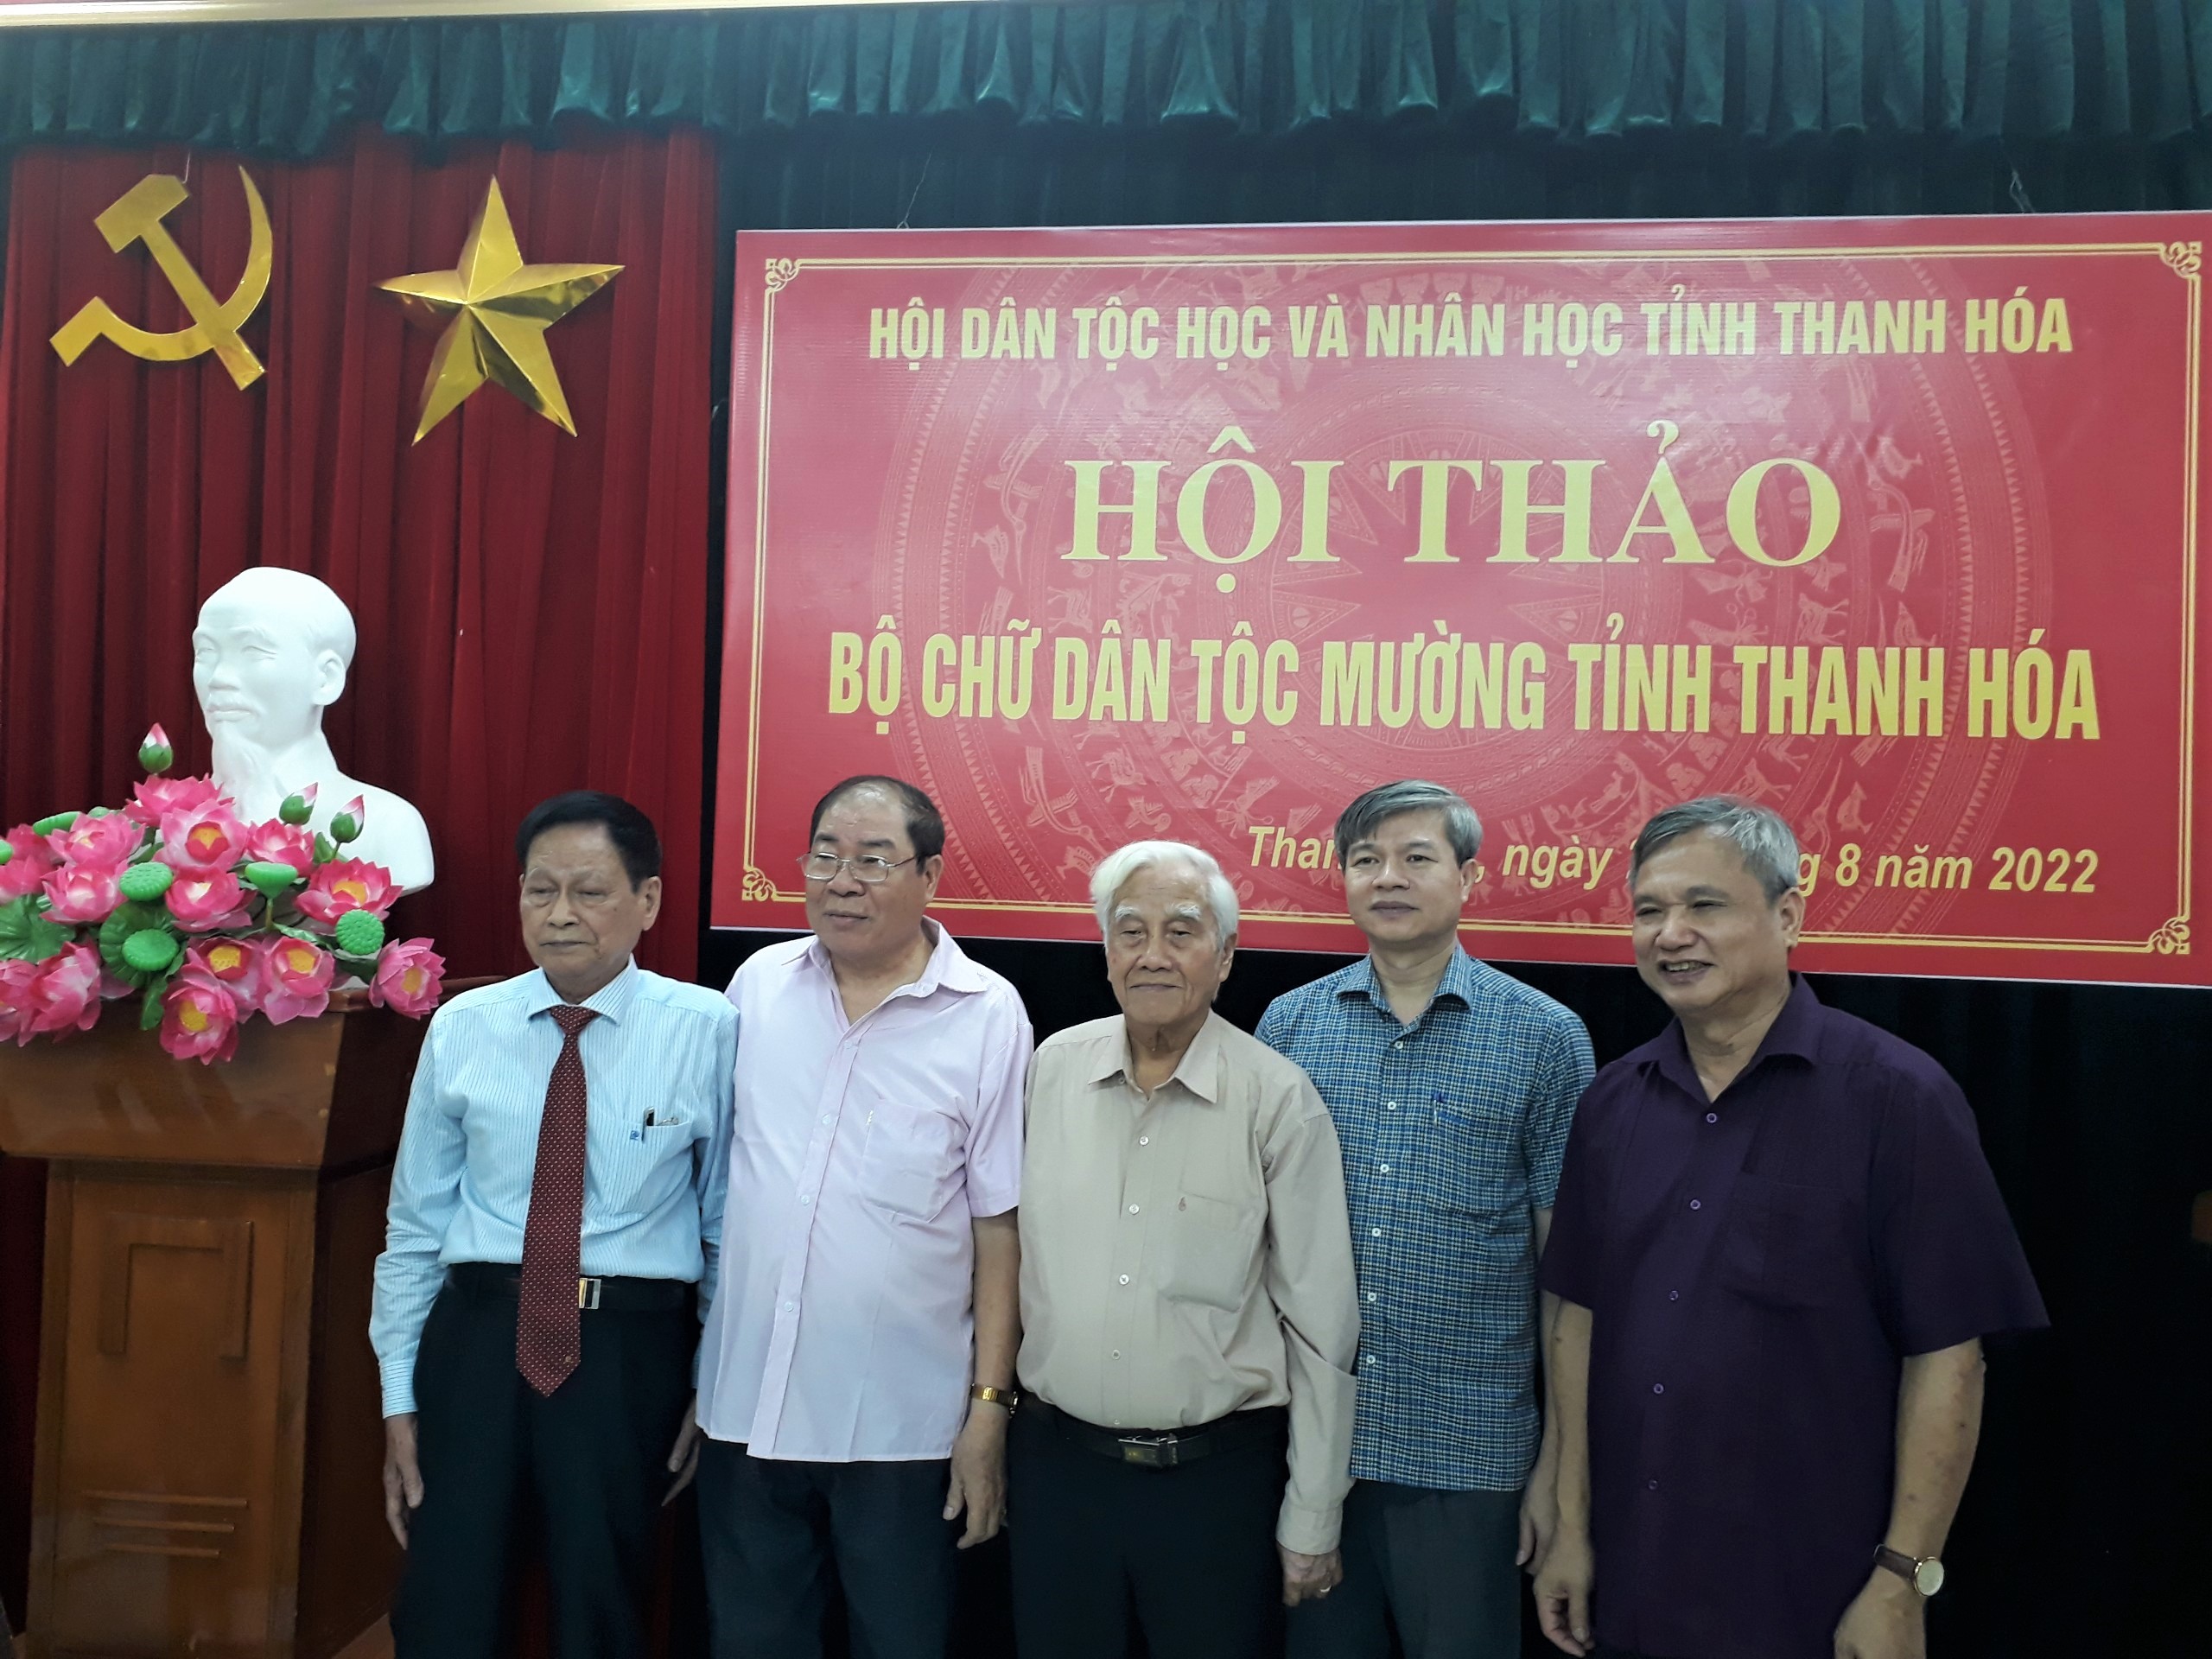 Hội Dân tộc học và Nhân học Thanh Hóa tổ chức Hội thảo về “Bộ chữ dân tộc Mường tỉnh Thanh Hóa”